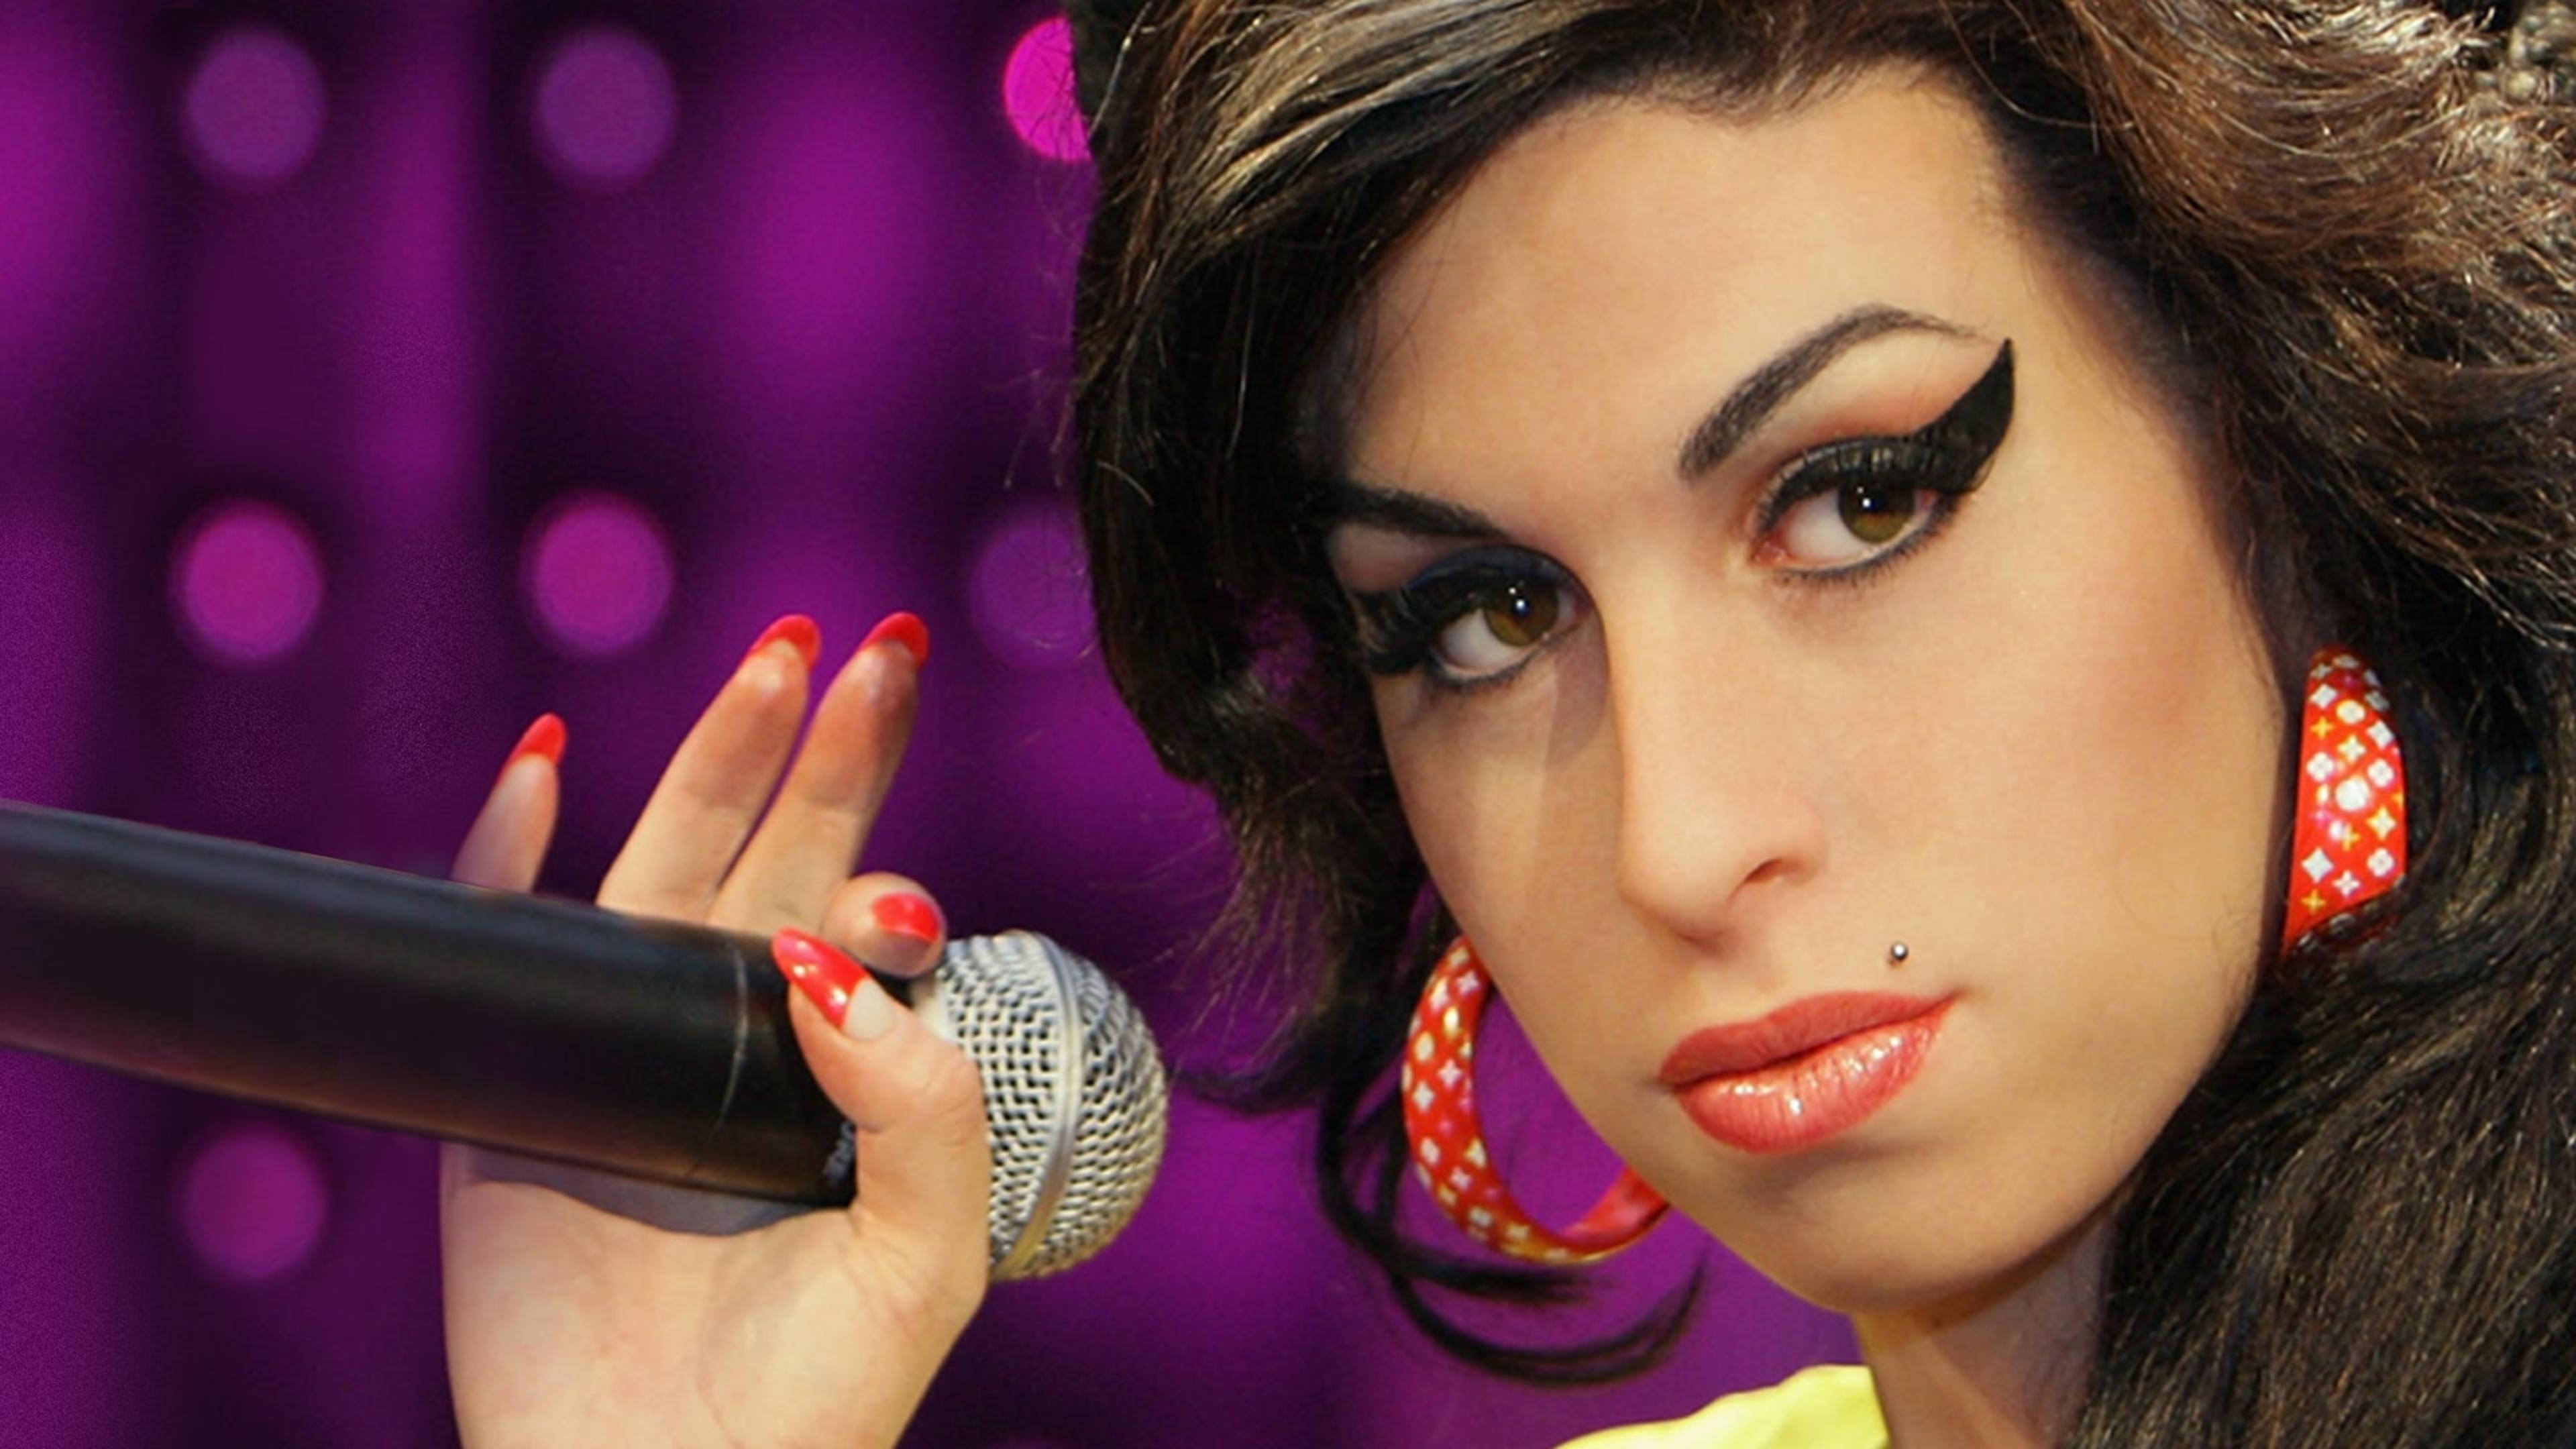 Amy Winehouse: A Final Goodbye backdrop